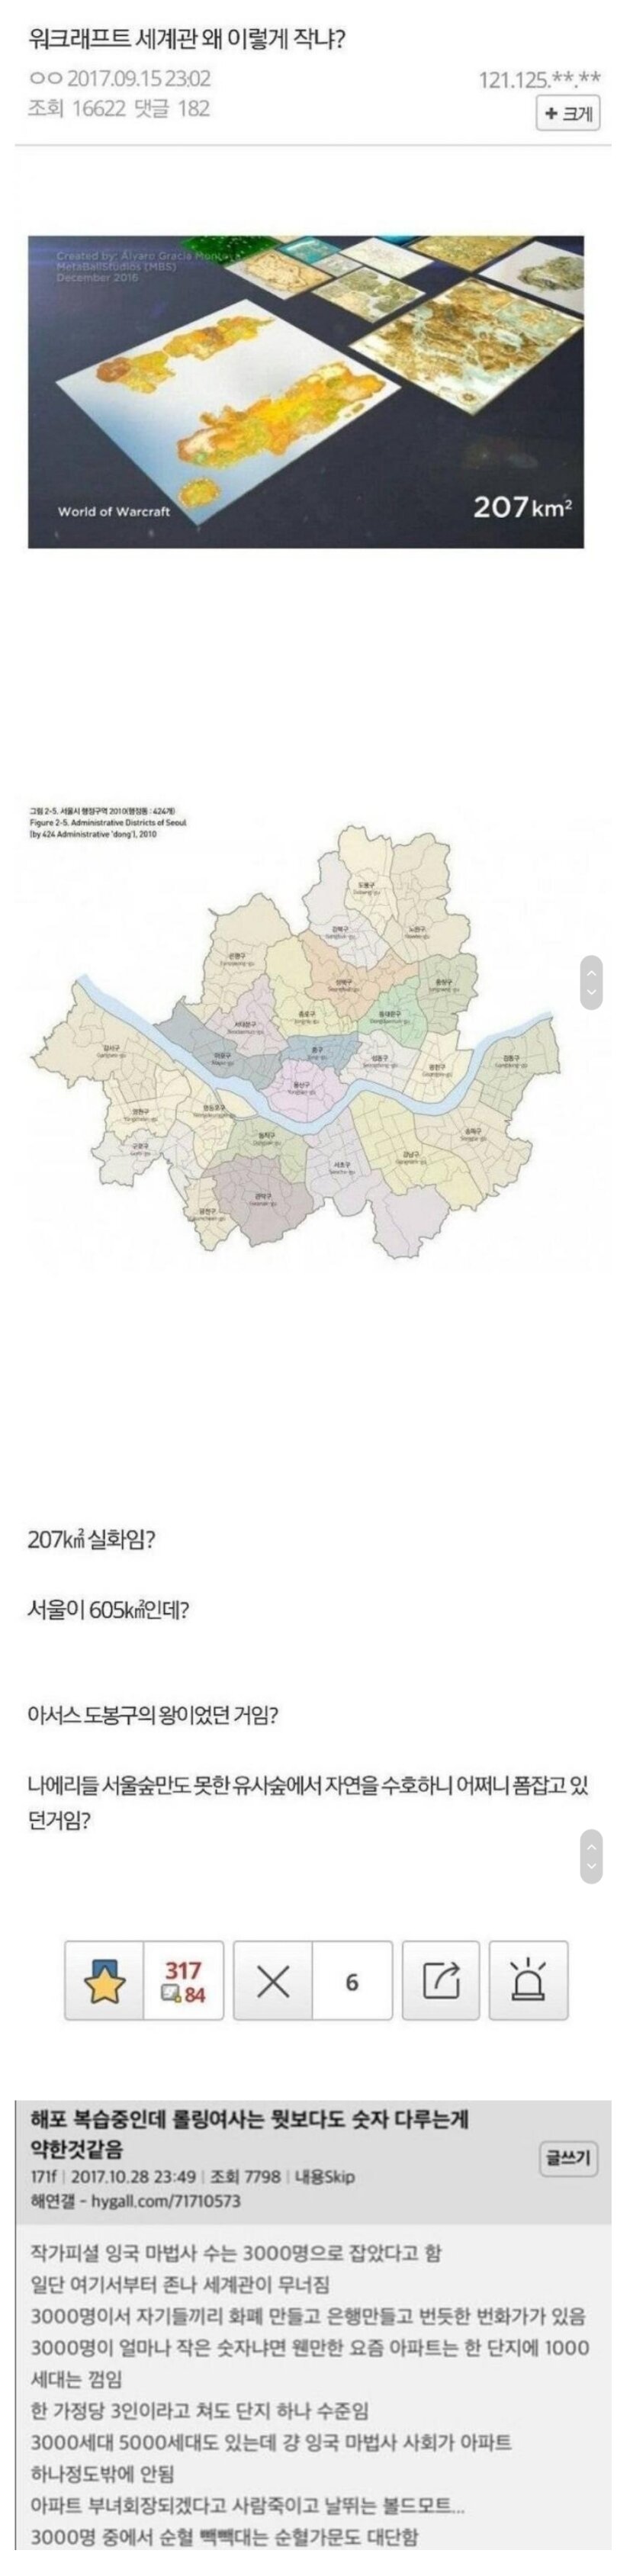 도봉구의 왕 아서스 vs 아파트 부녀회장 볼드모트